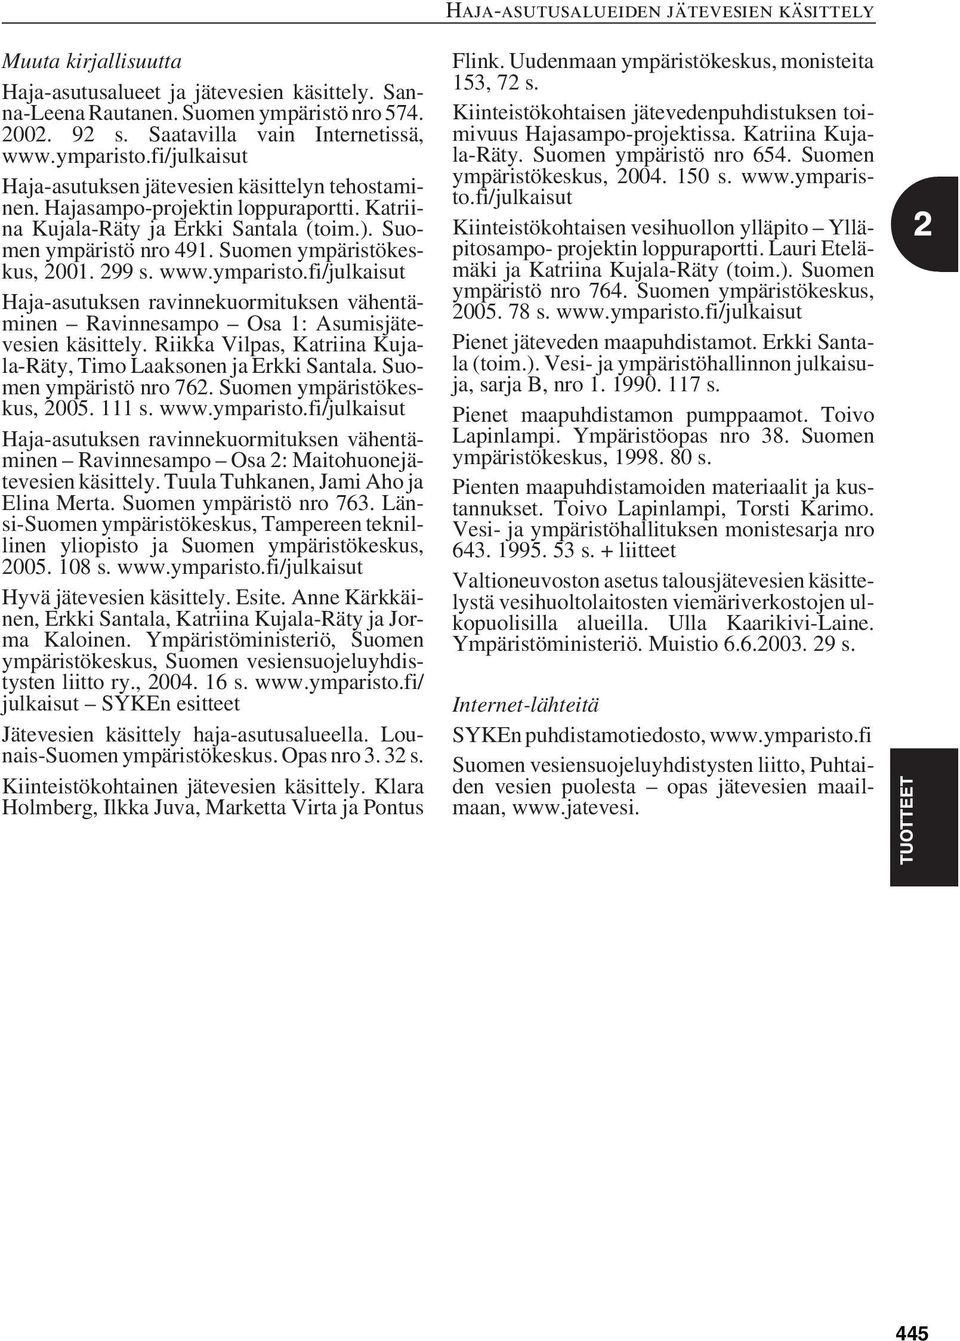 Suomen ympäristökeskus, 2001. 299 s. www.ymparisto.fi/julkaisut Haja-asutuksen ravinnekuormituksen vähentäminen Ravinnesampo Osa 1: Asumisjätevesien käsittely.